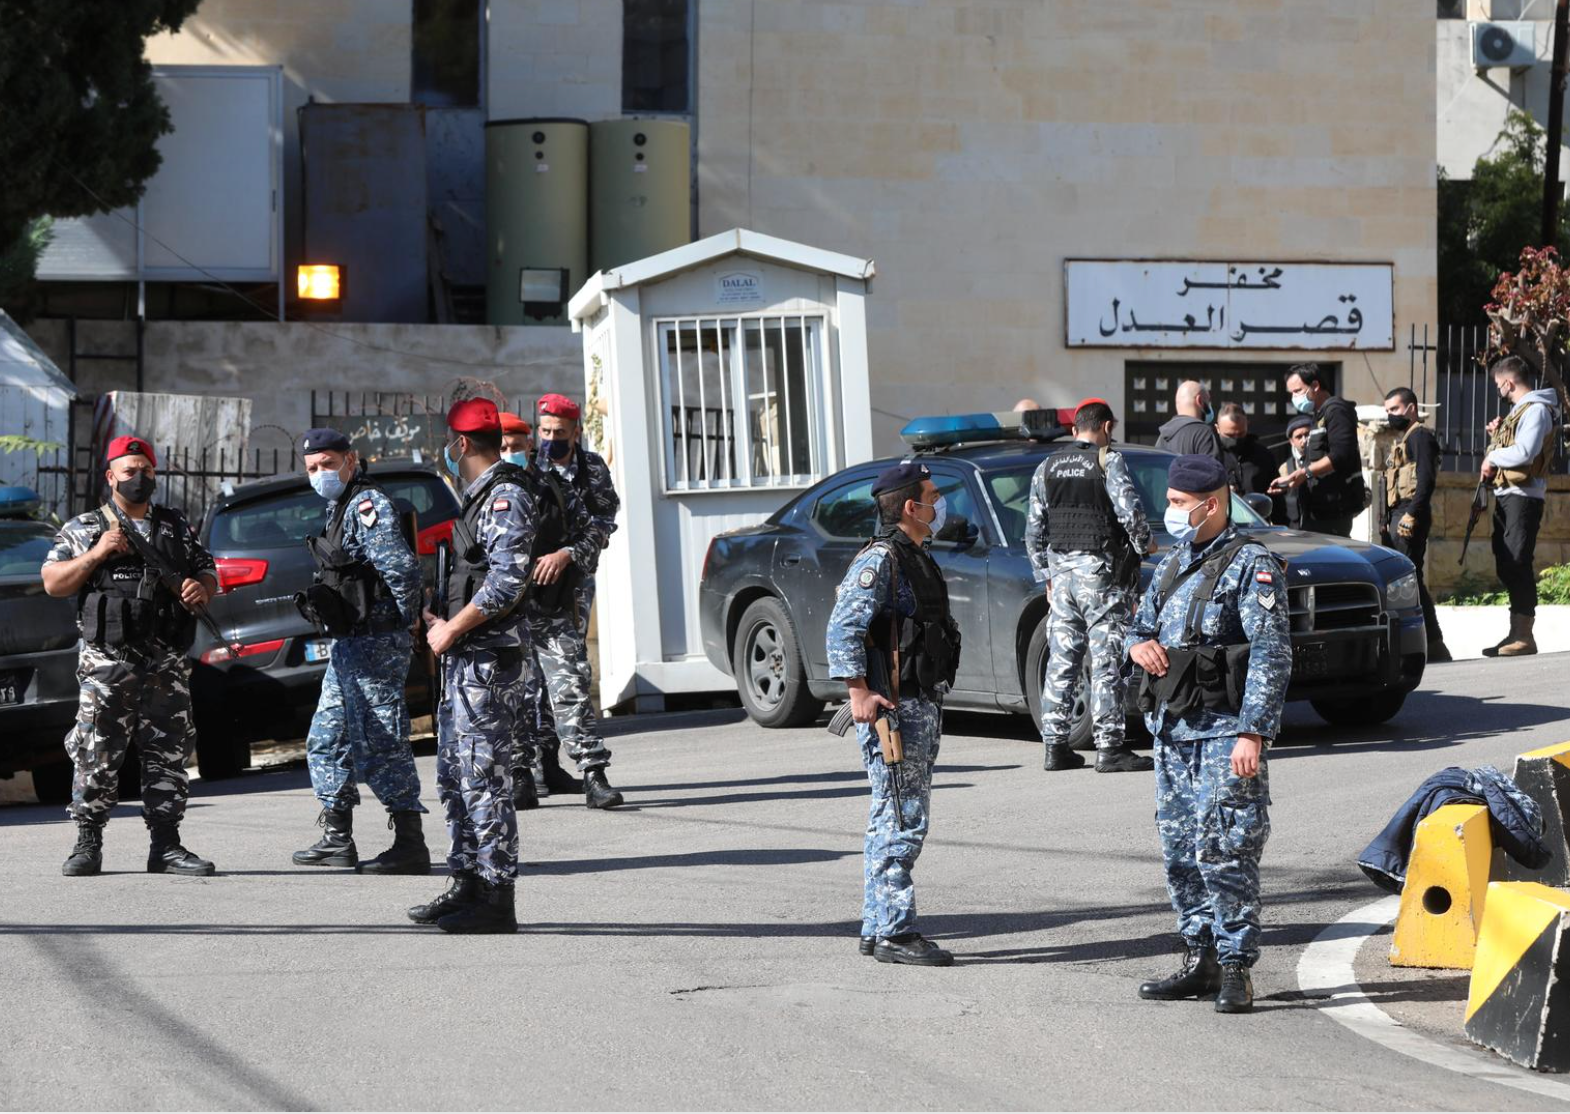 69 të burgosur arratisen nga burgu i Libanit